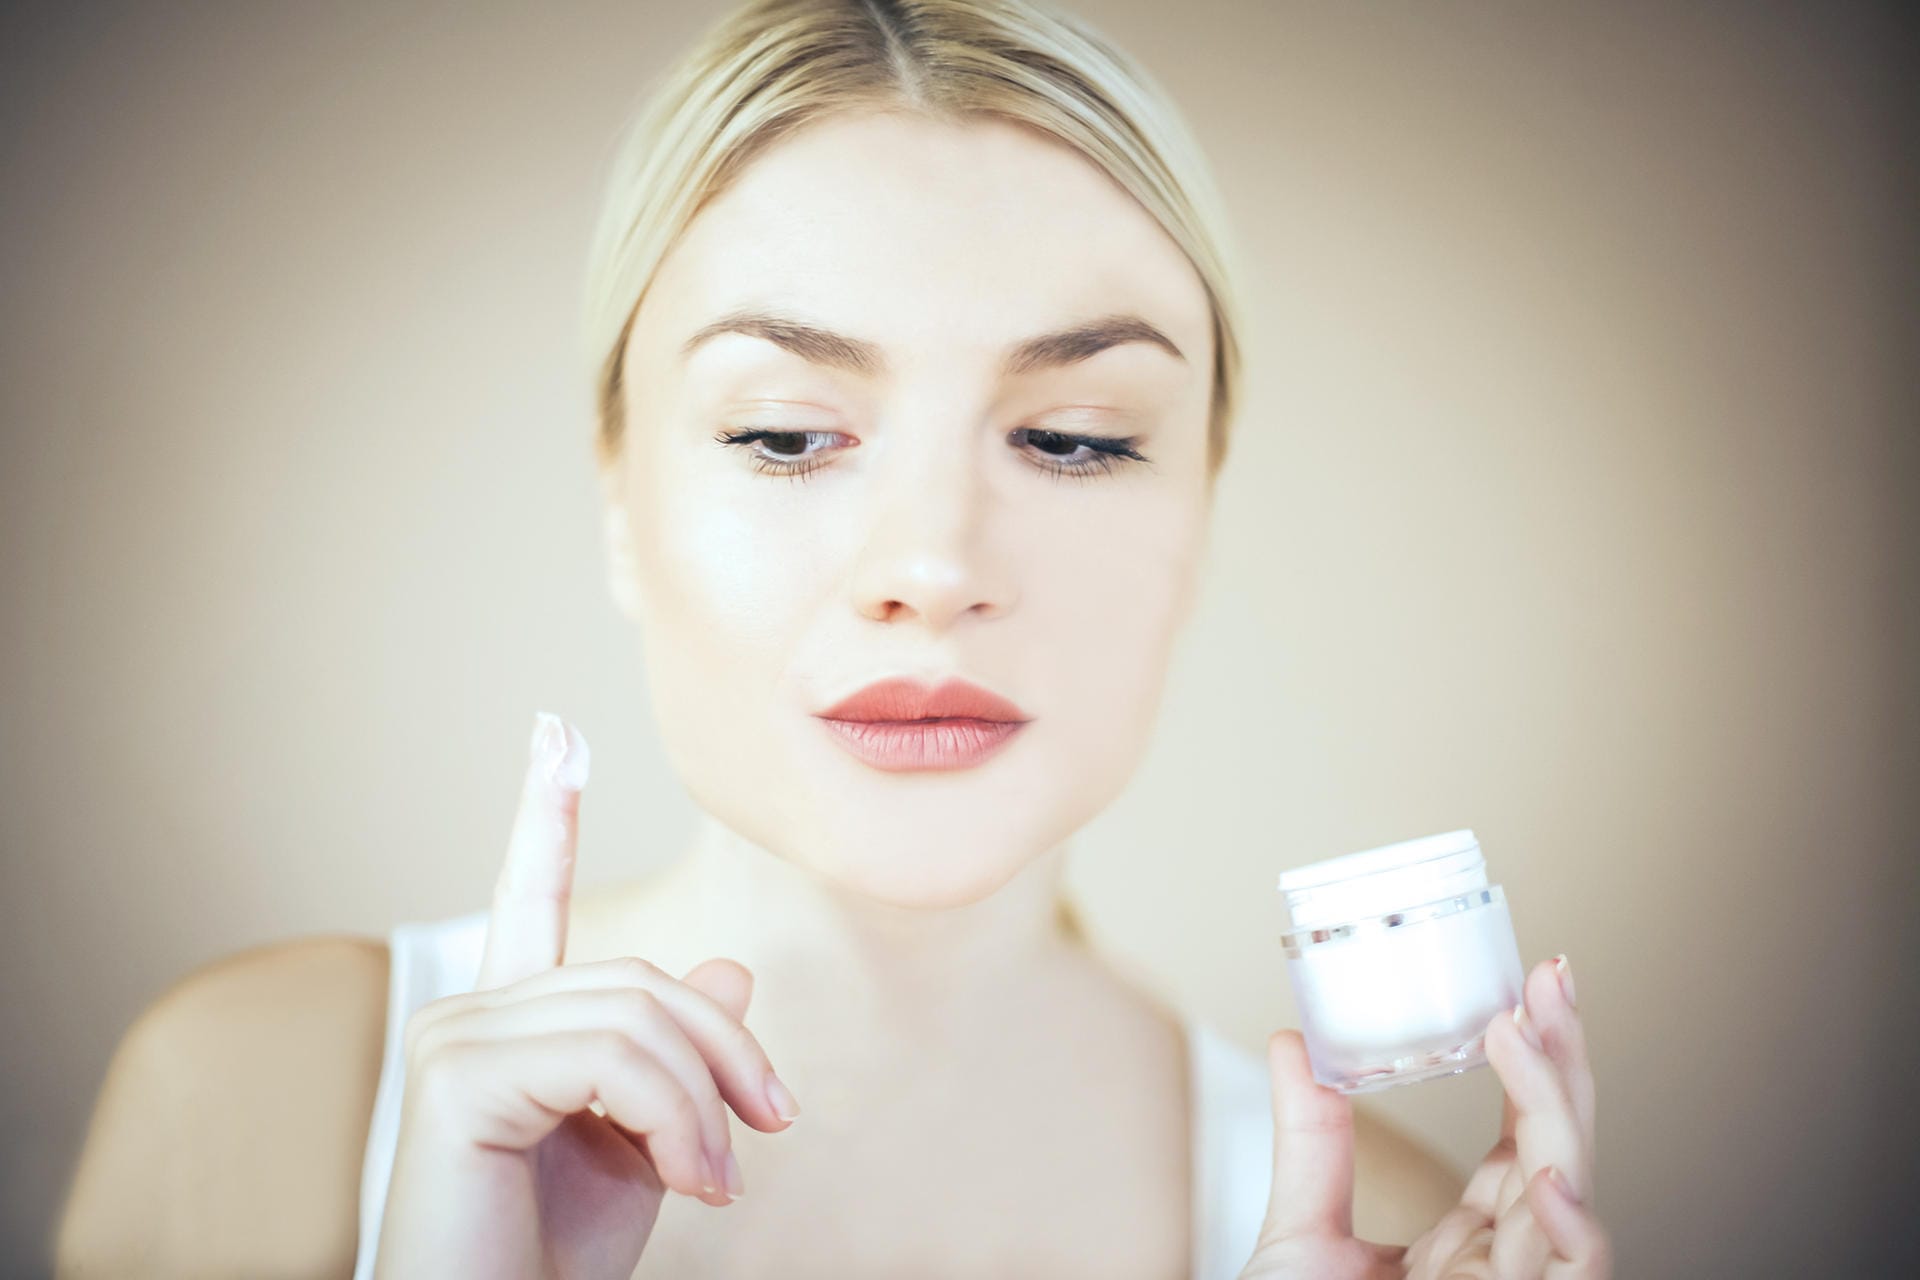 Mikroplastik steckt auch in einigen Kosmetikprodukten, zum Beispiel in Gesichtscremes. Dort dient es als kostengünstiges Füllmaterial.